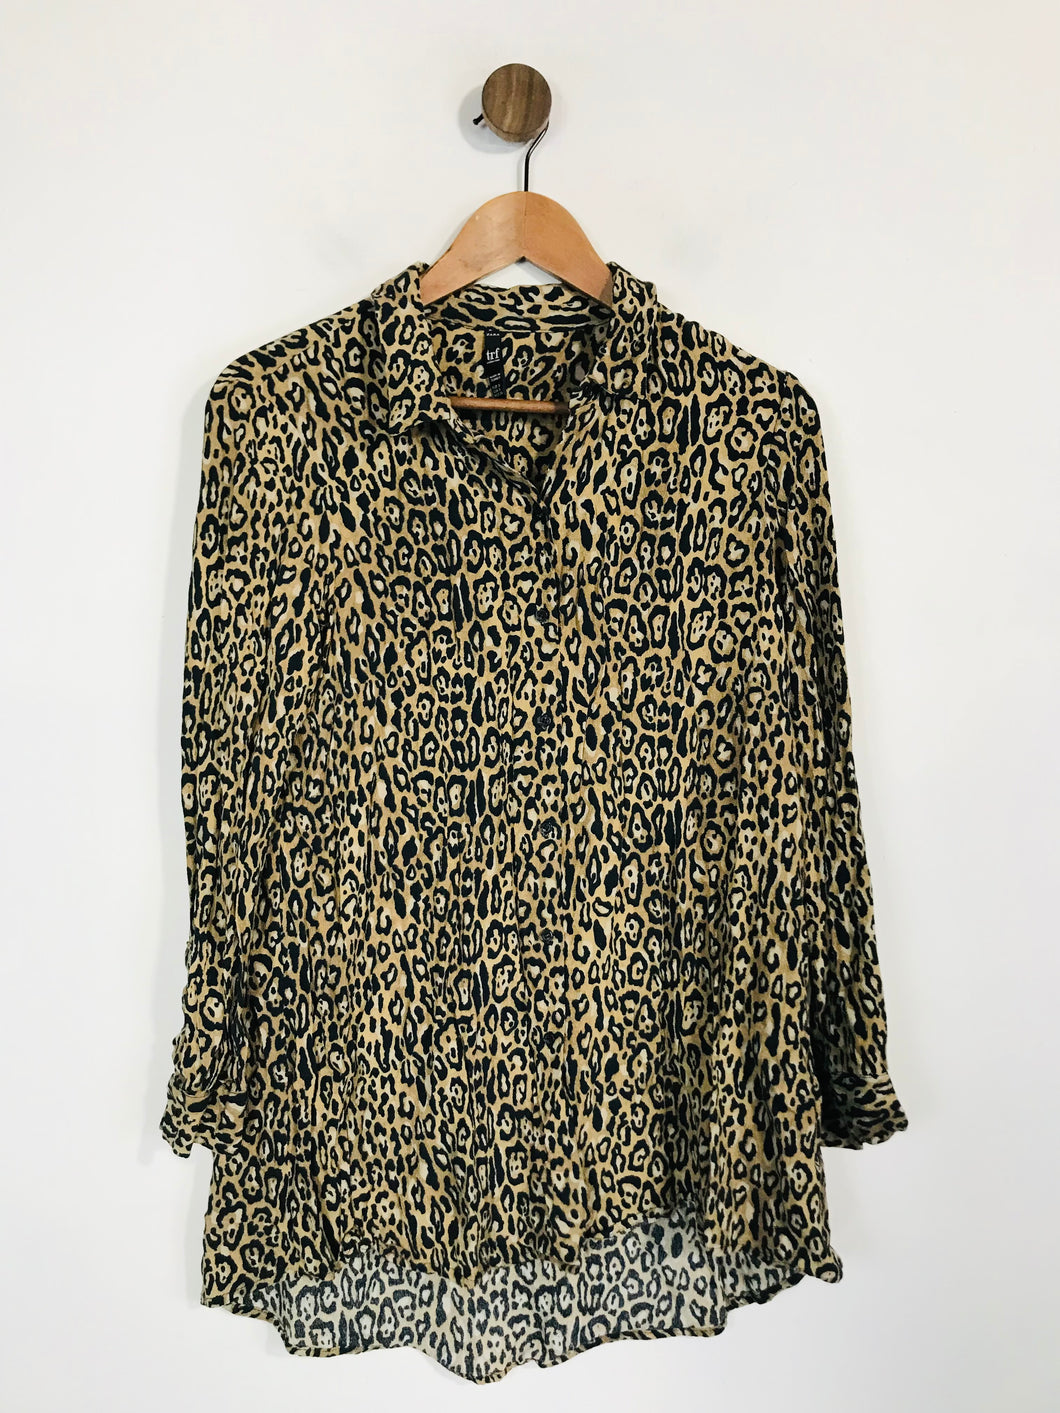 Zara Women's Leopard Print Button-Up Shirt | S UK8 | Multicoloured